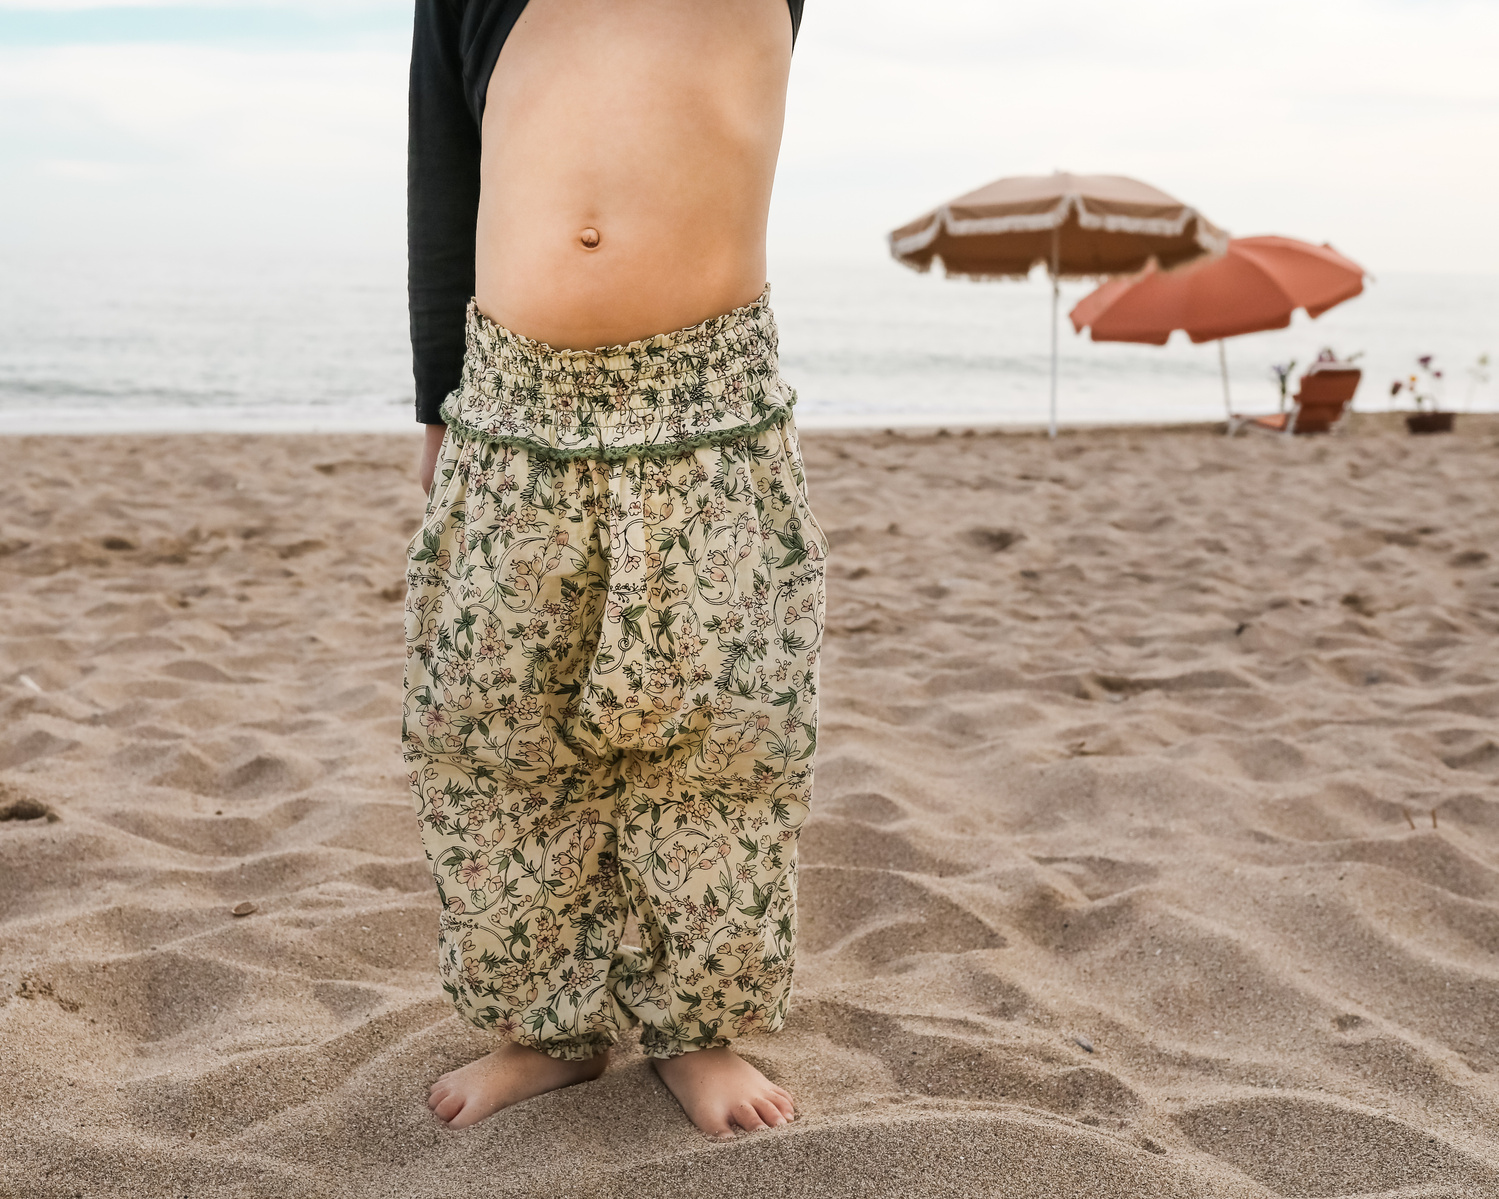 detalle de pantalón de niña en la playa las casetas del Garraf en barcelona, españa